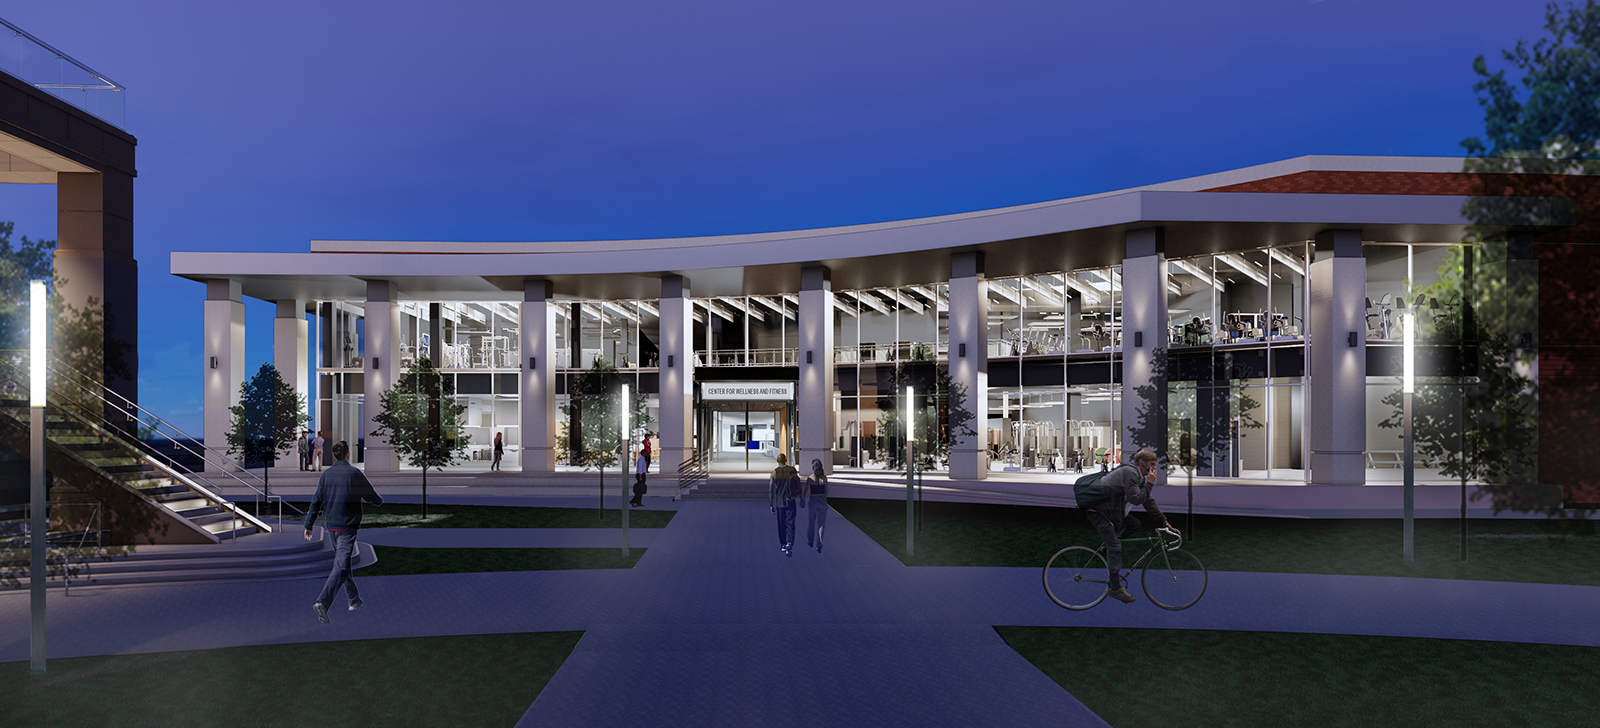 New Rec Center rendering